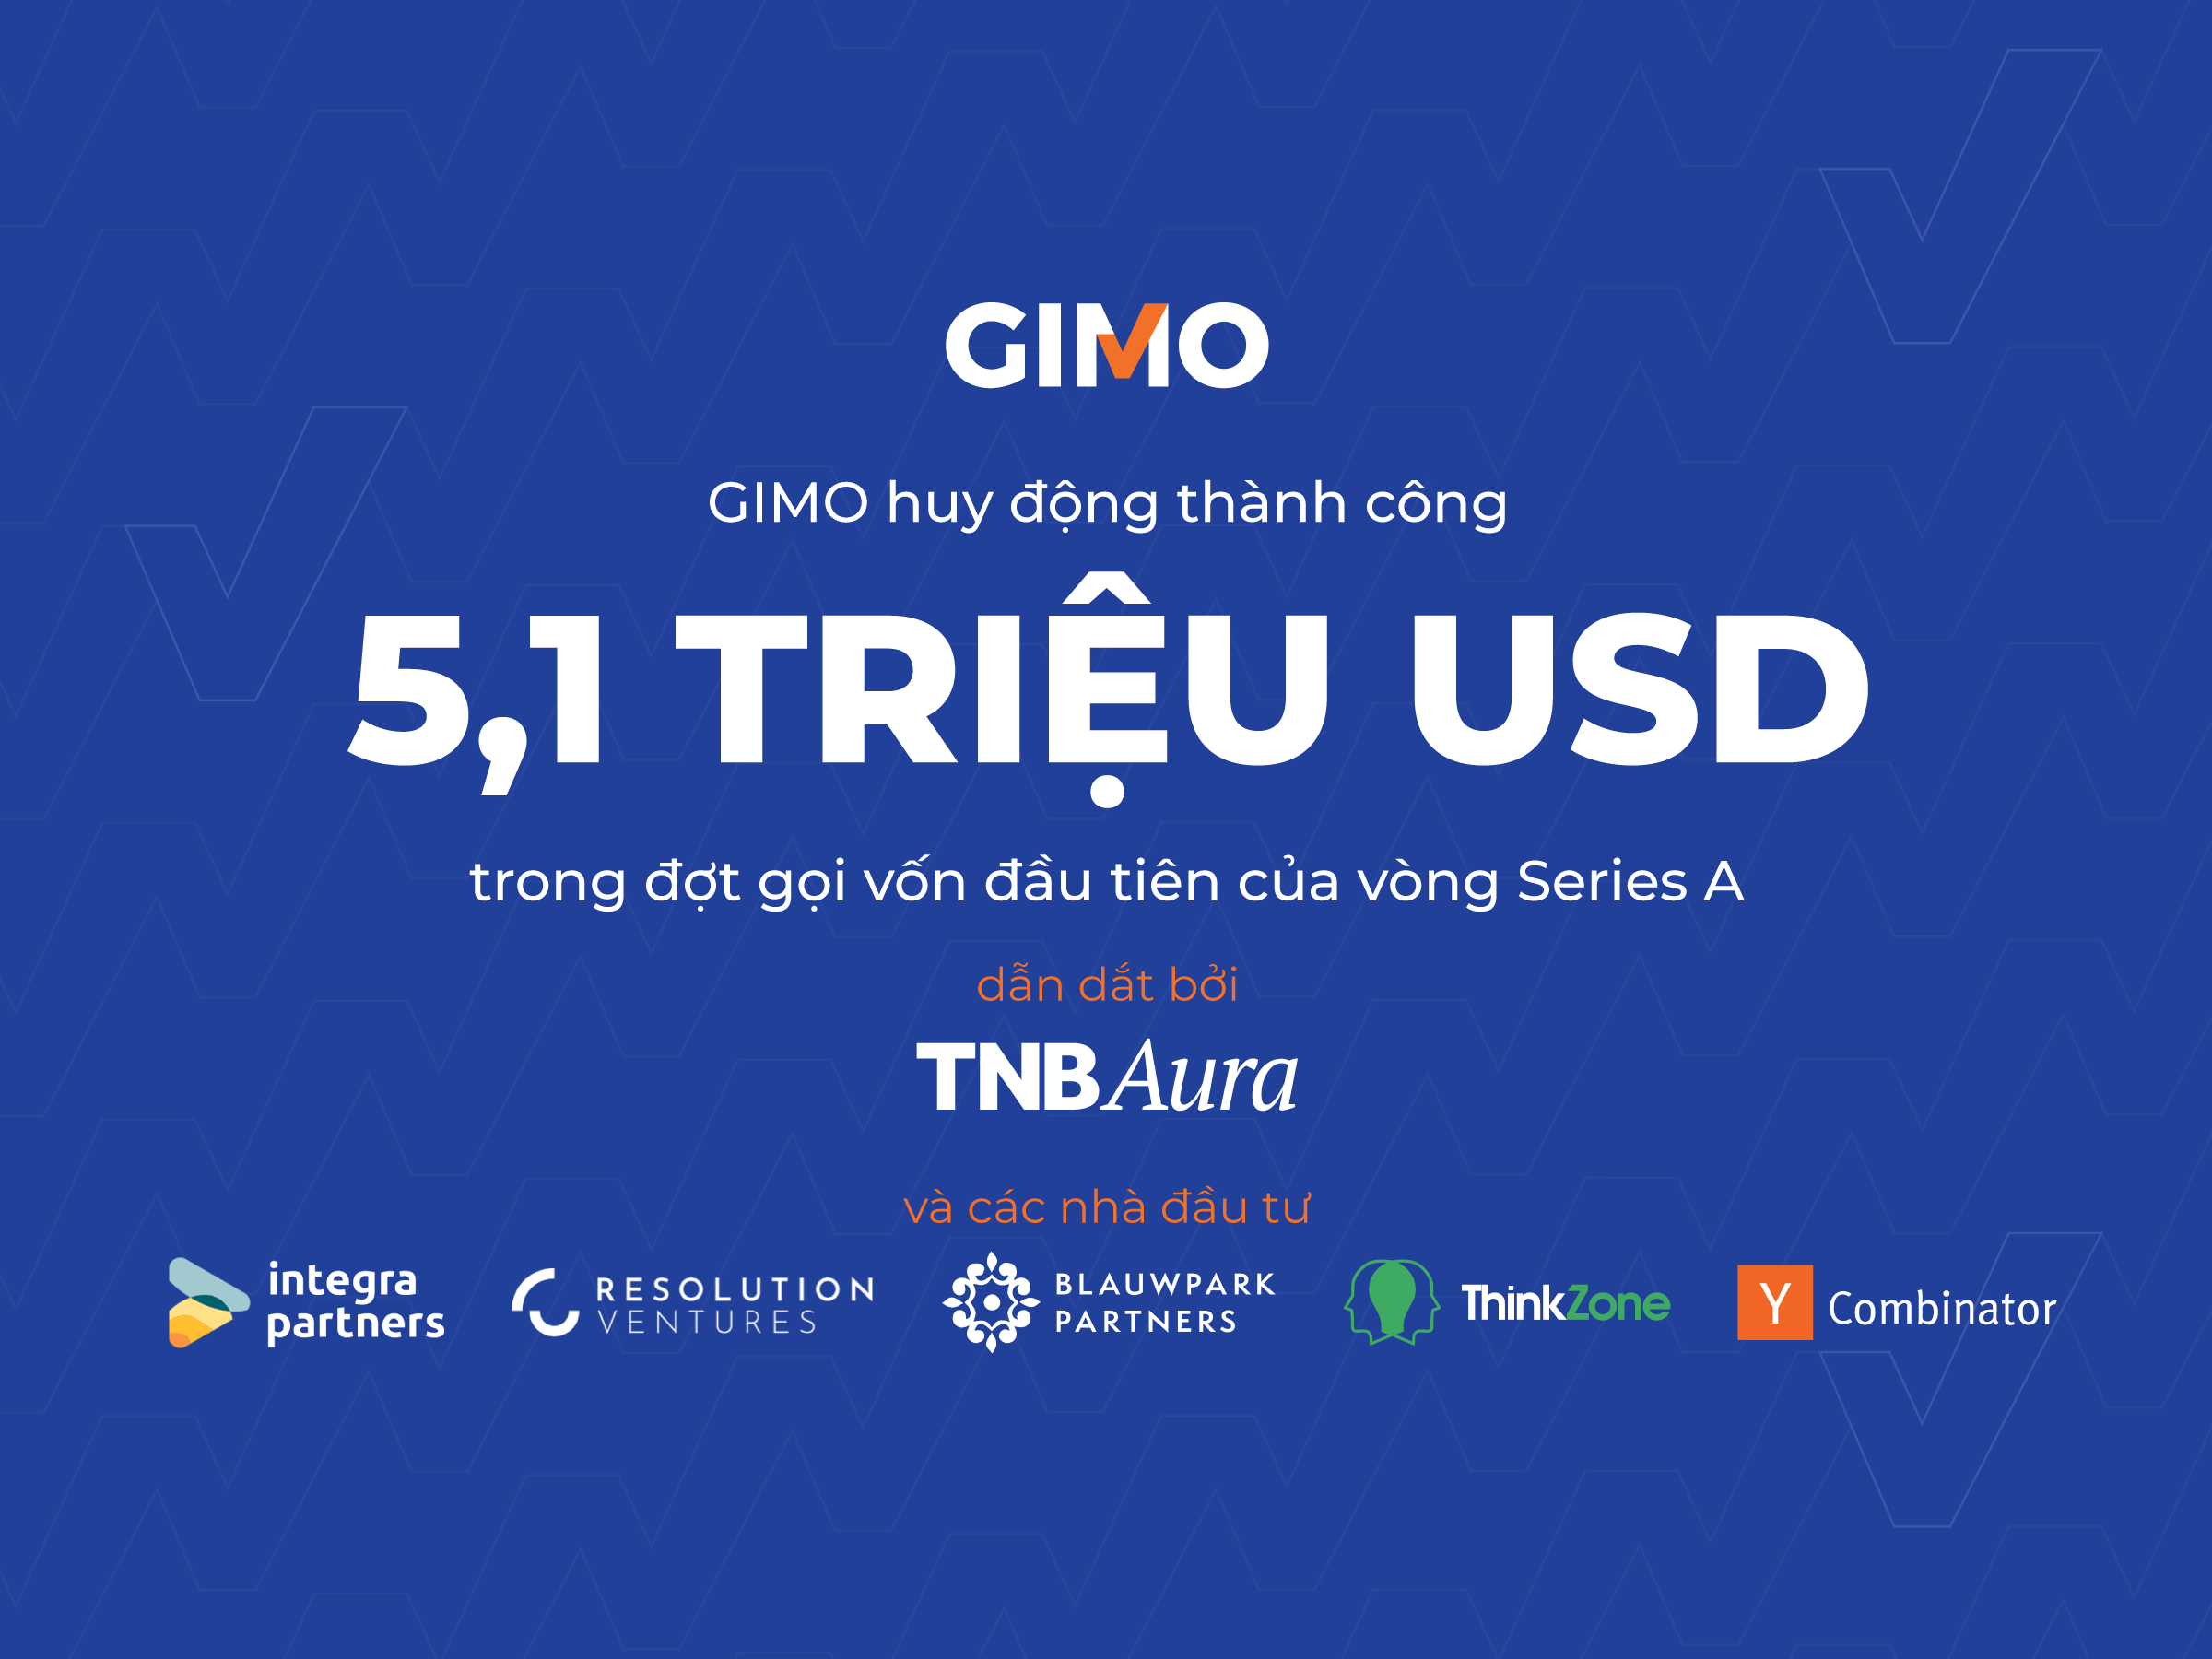 Startup công nghệ tài chính GIMO huy động 5,1 triệu đô la Mỹ trong đợt gọi vốn đầu tiên của vòng Series A